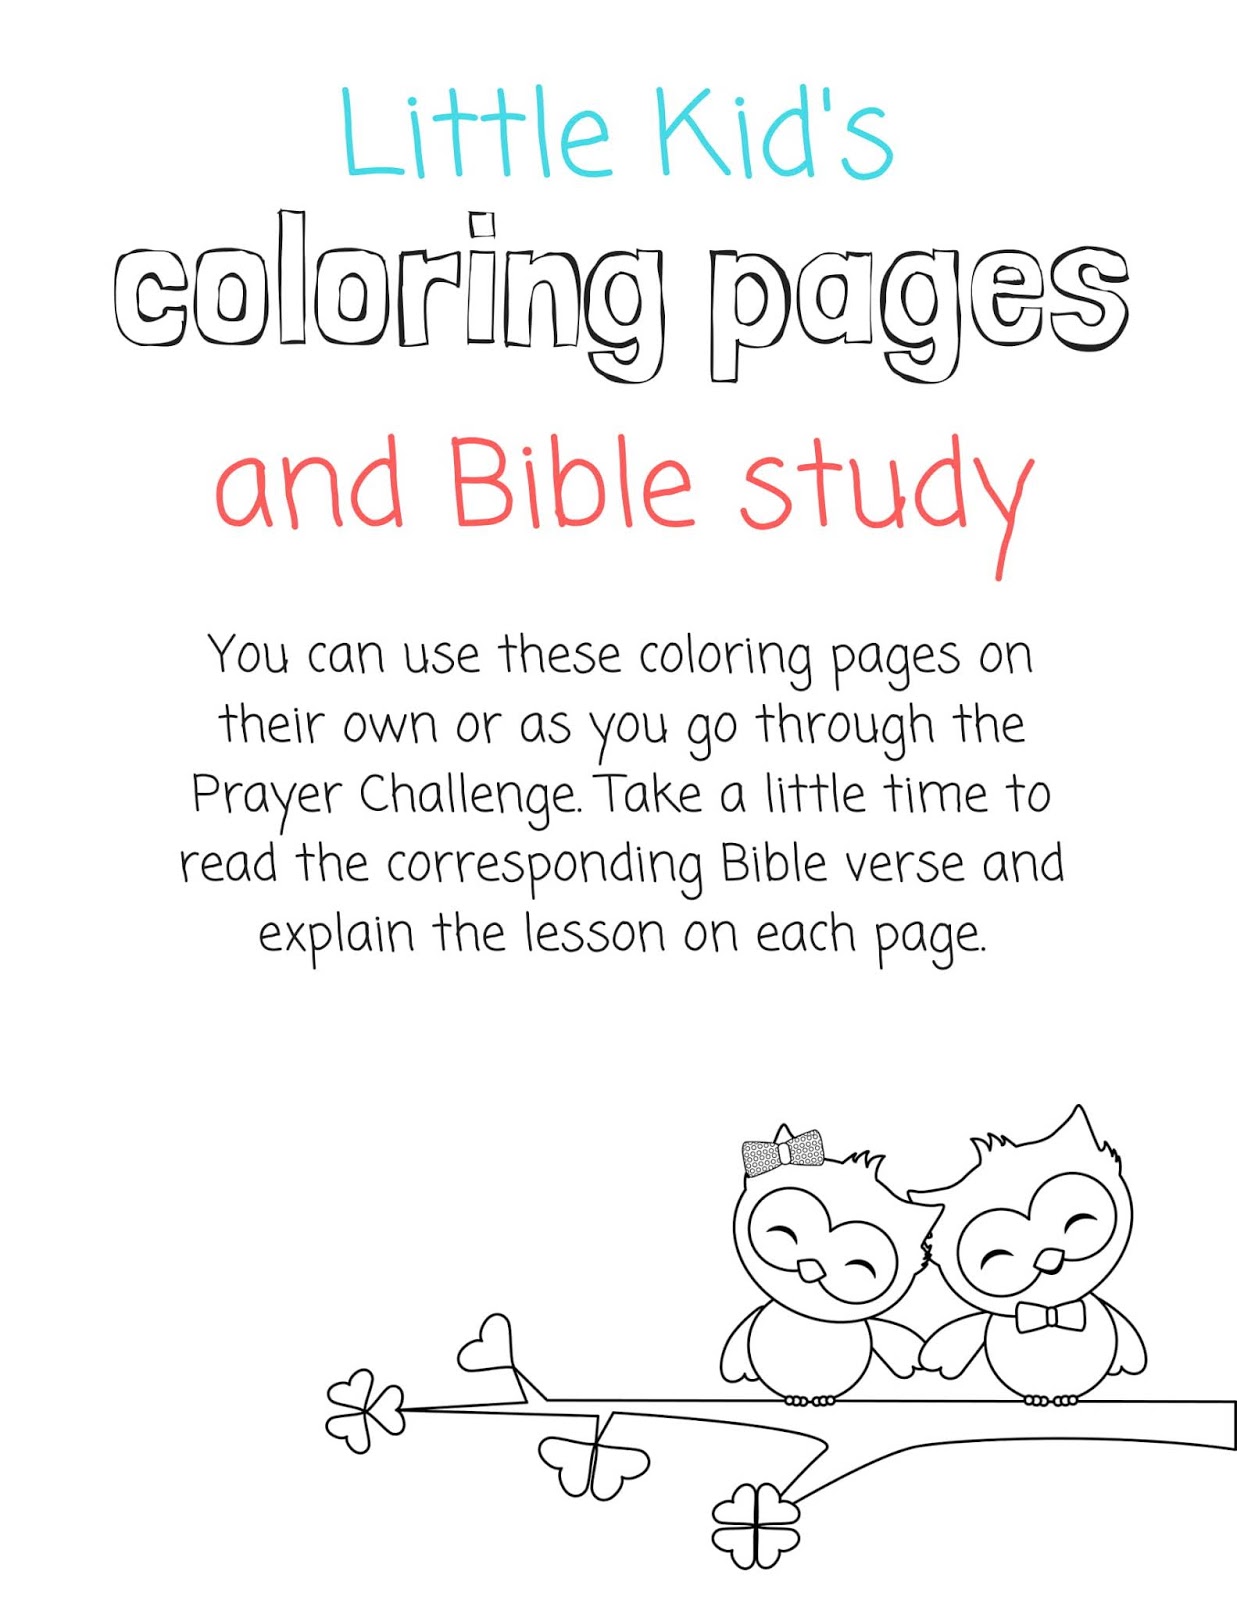 coloring pages,coloring,coloring pages for kids,coloring book,kids coloring pages,colouring, 2019 coloring